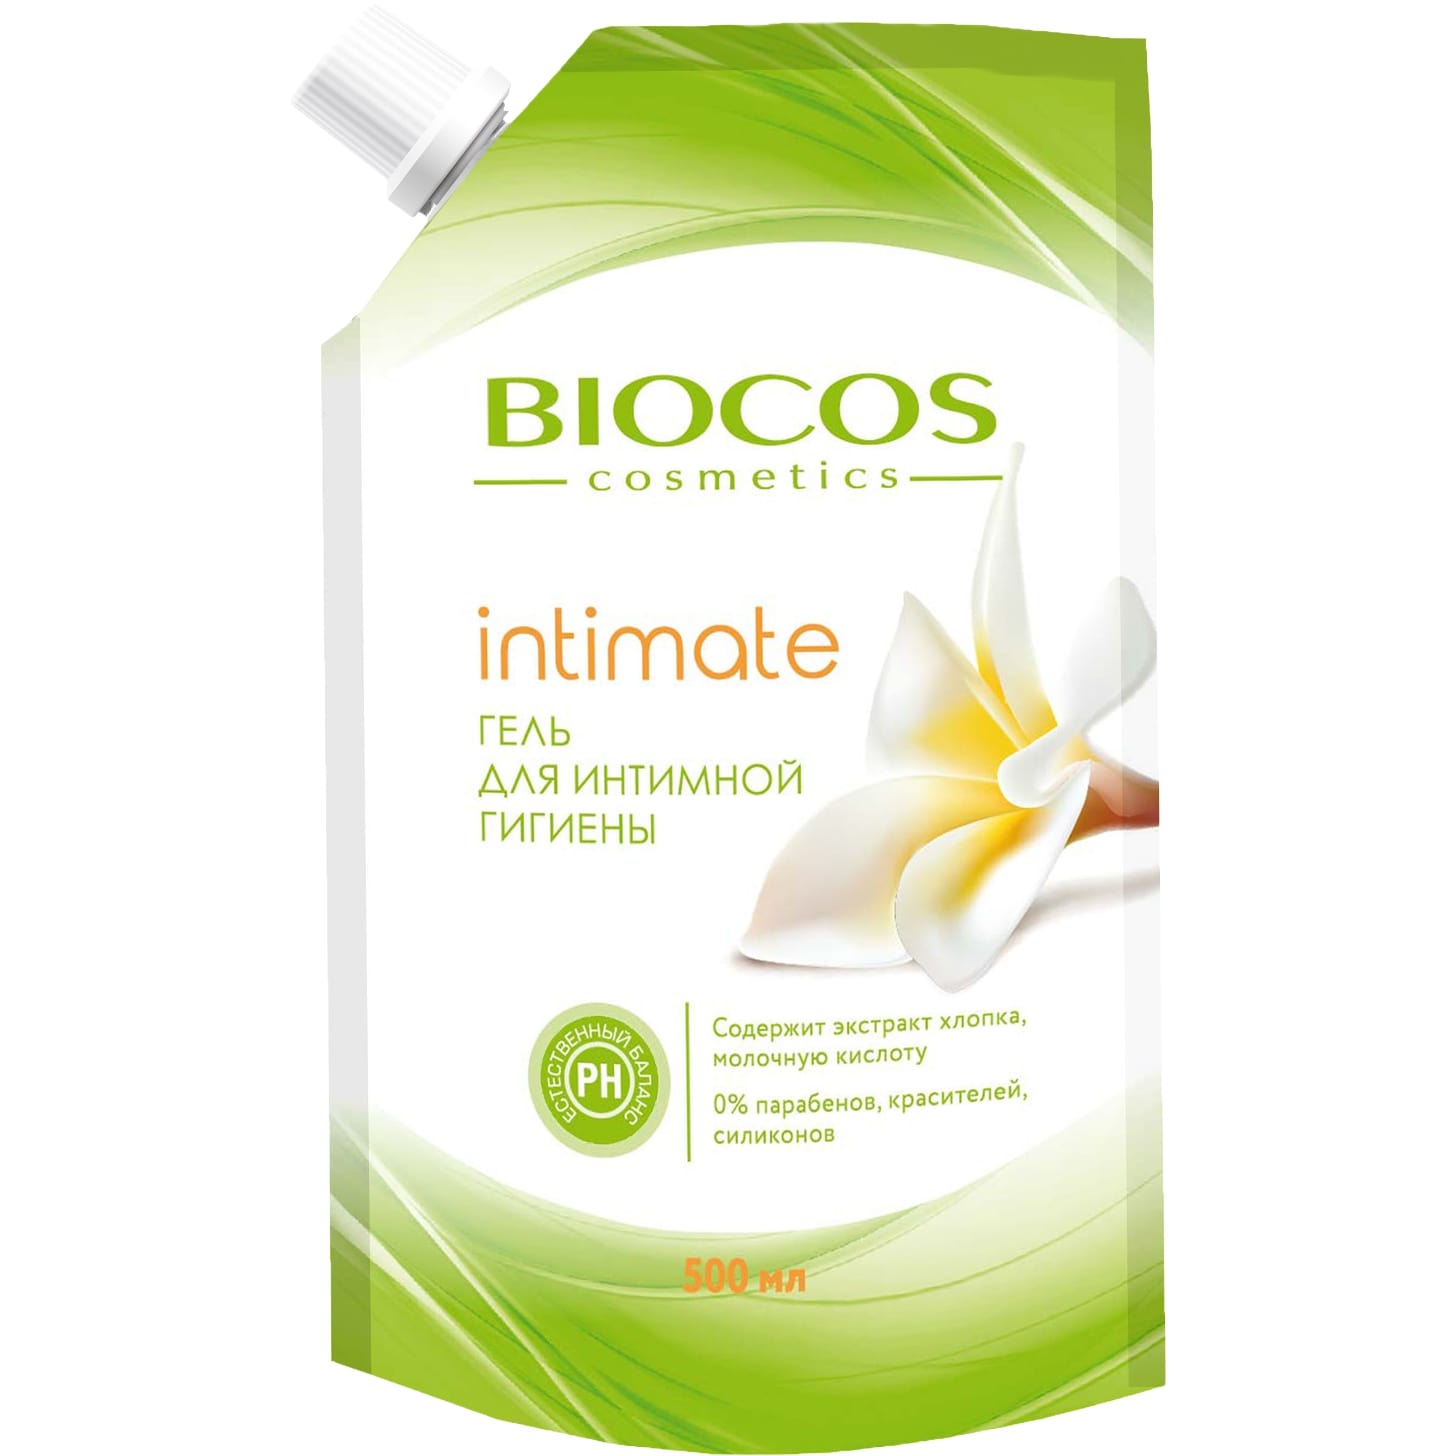 Гель для интимной гигиены BioCos intimate с экстрактом хлопка и молочной кислотой 500 мл гель для интимной гигиены beautydose с пантенолом и молочной кислотой 200 мл